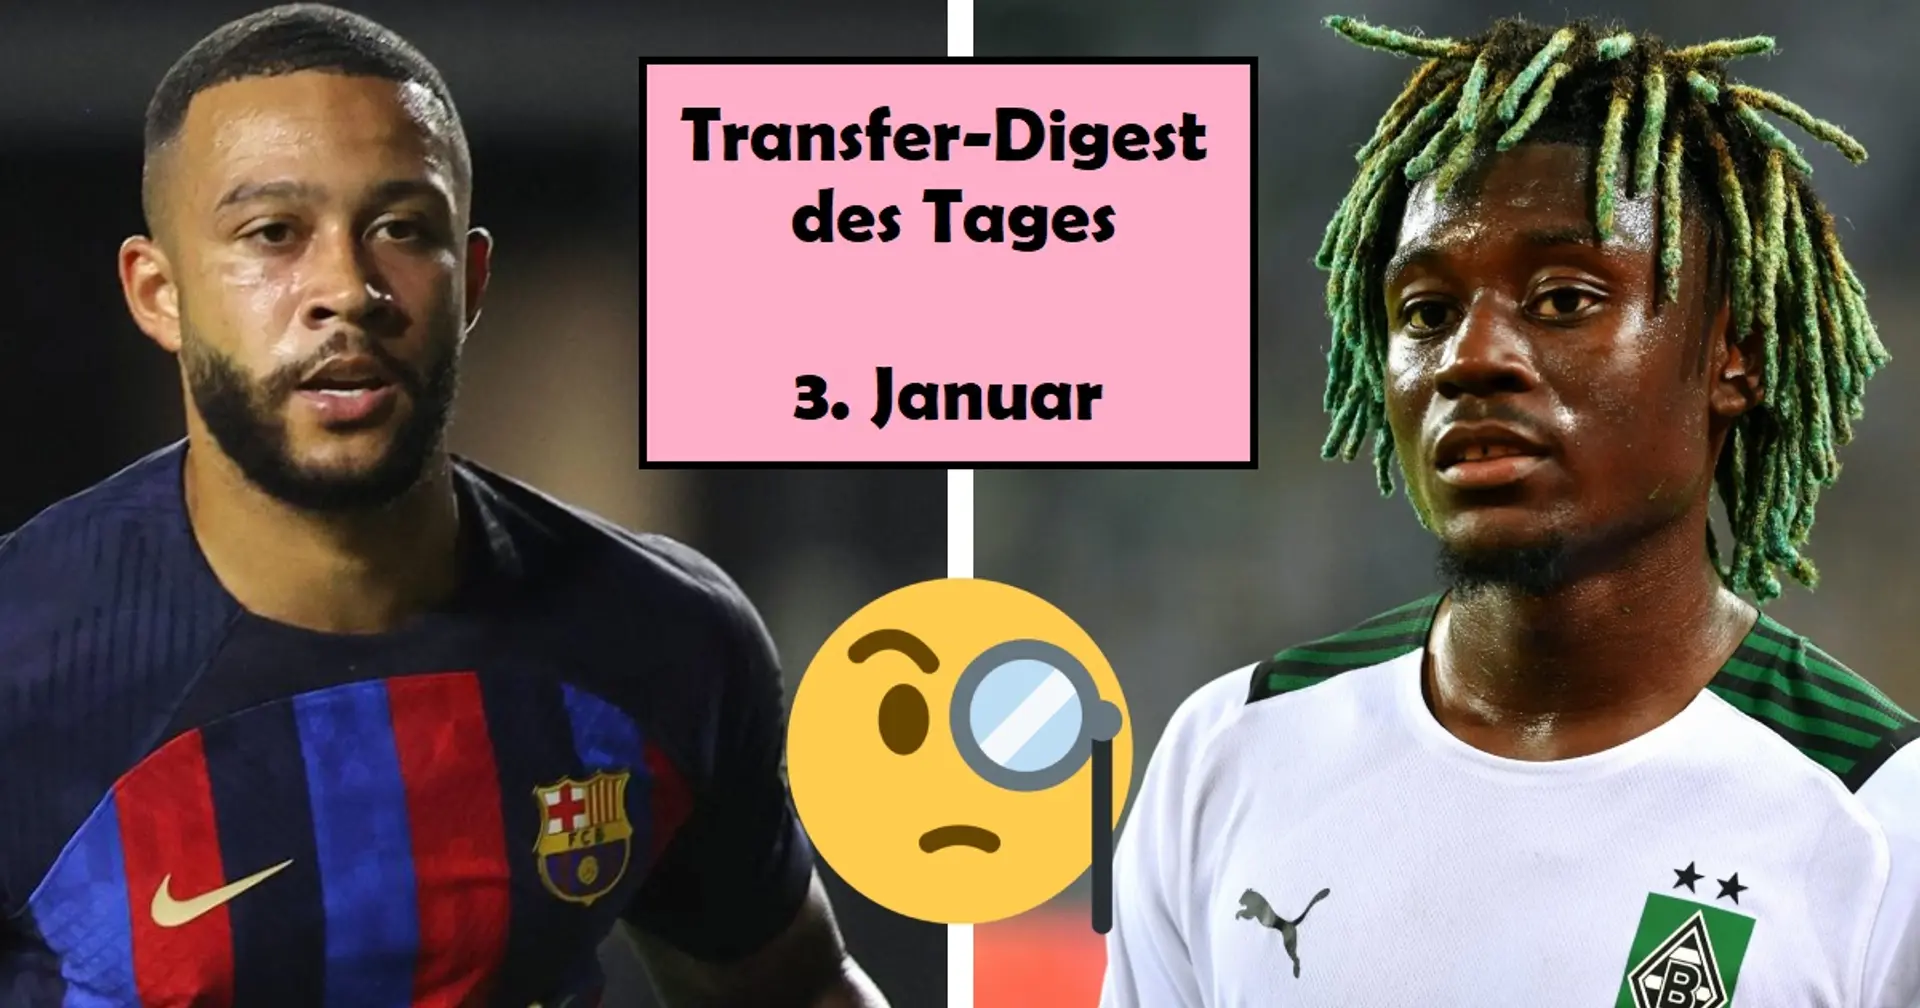 Manu Kone im Bayern-Fokus, Depay soll bleiben: Wichtigste Transfer-News des Tages - beim FCB und weltweit  